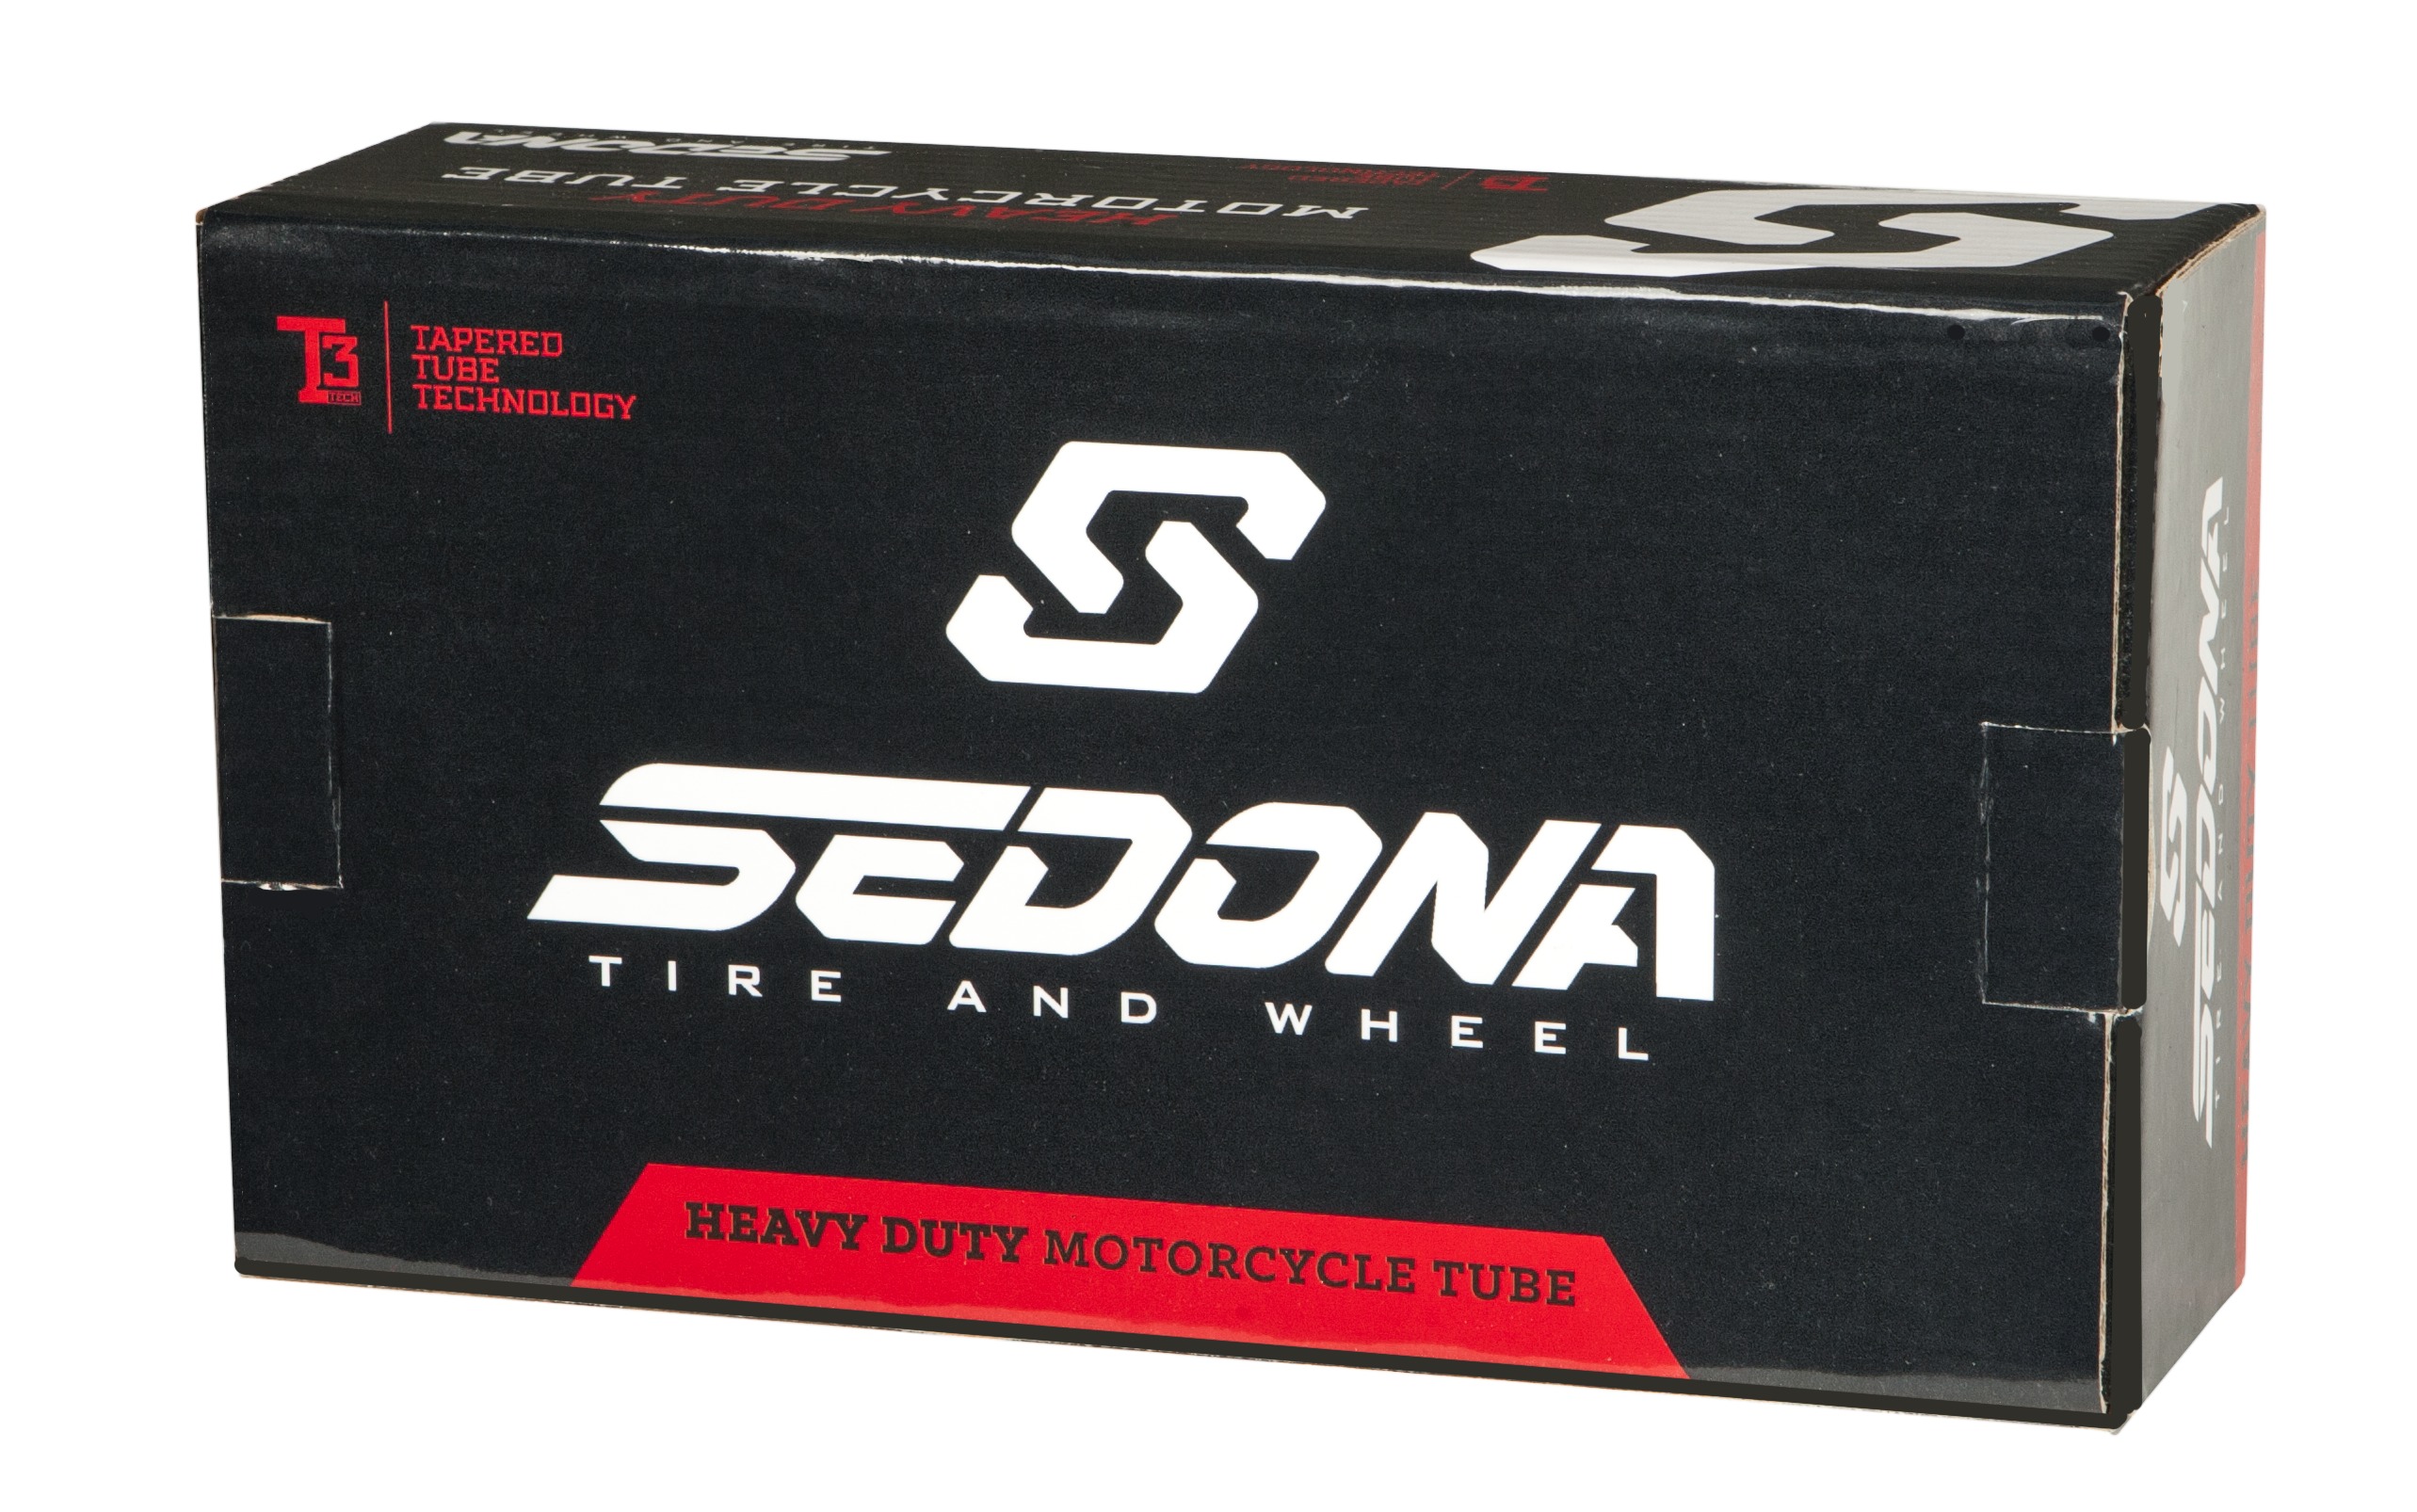 Sedona Heavy Duty Motorcycle Tube 400/460-18 - Click Image to Close